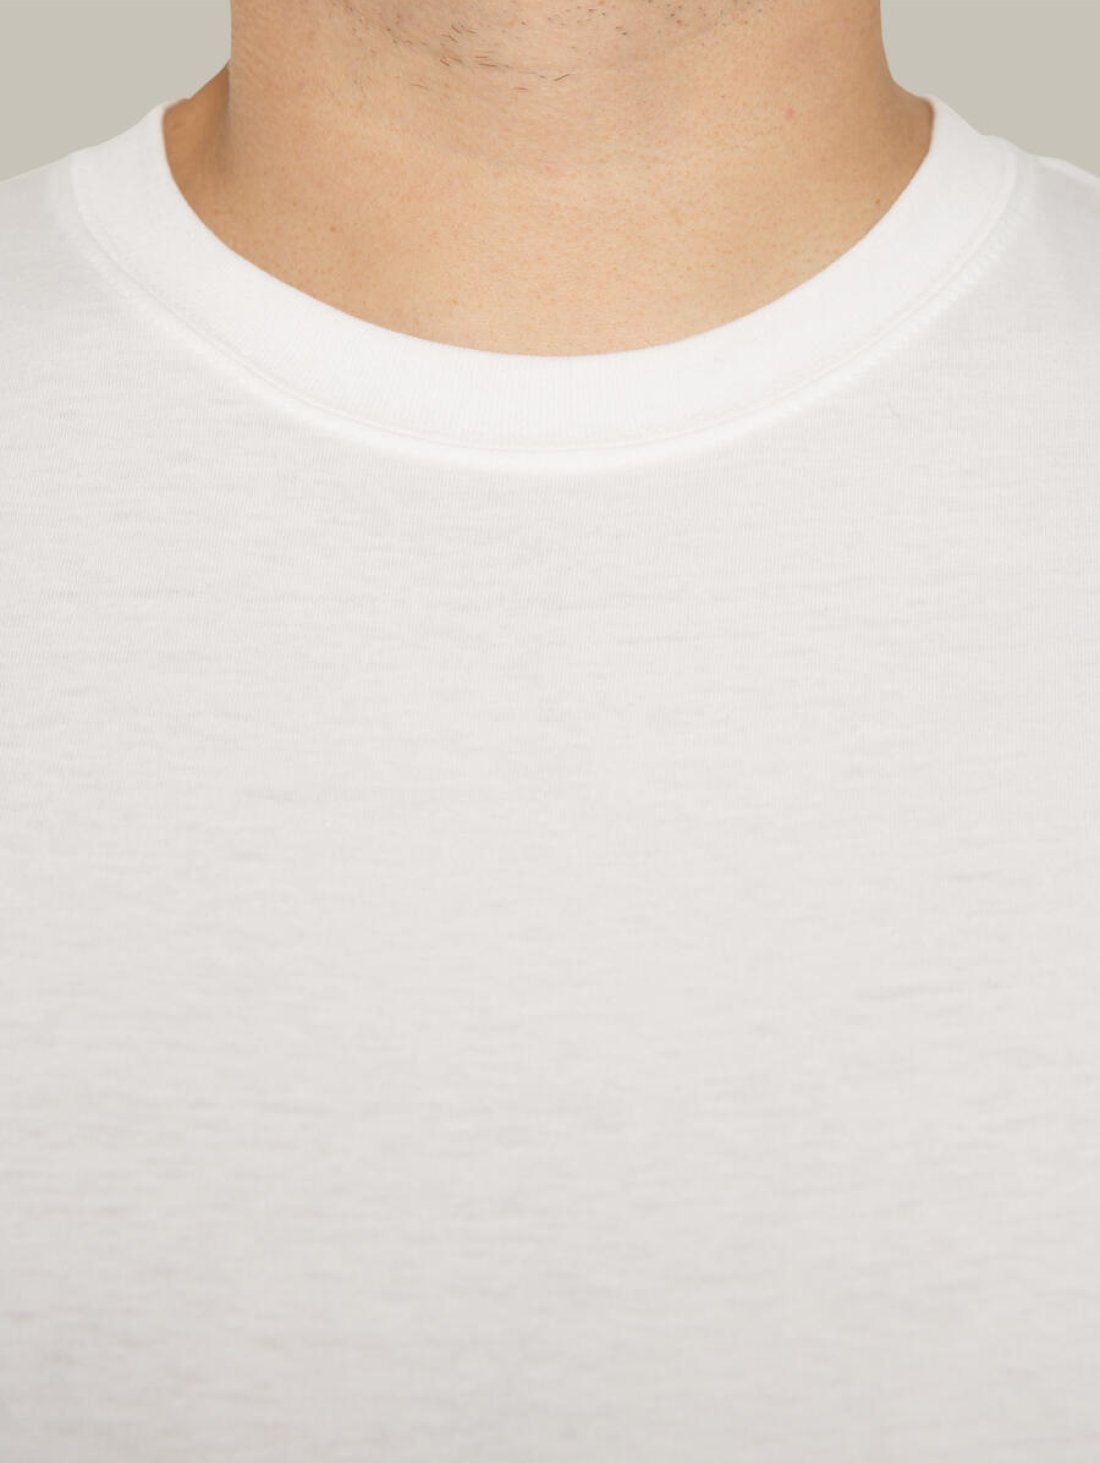 Чоловіча футболка, біла з принтом аватара Hopper 048